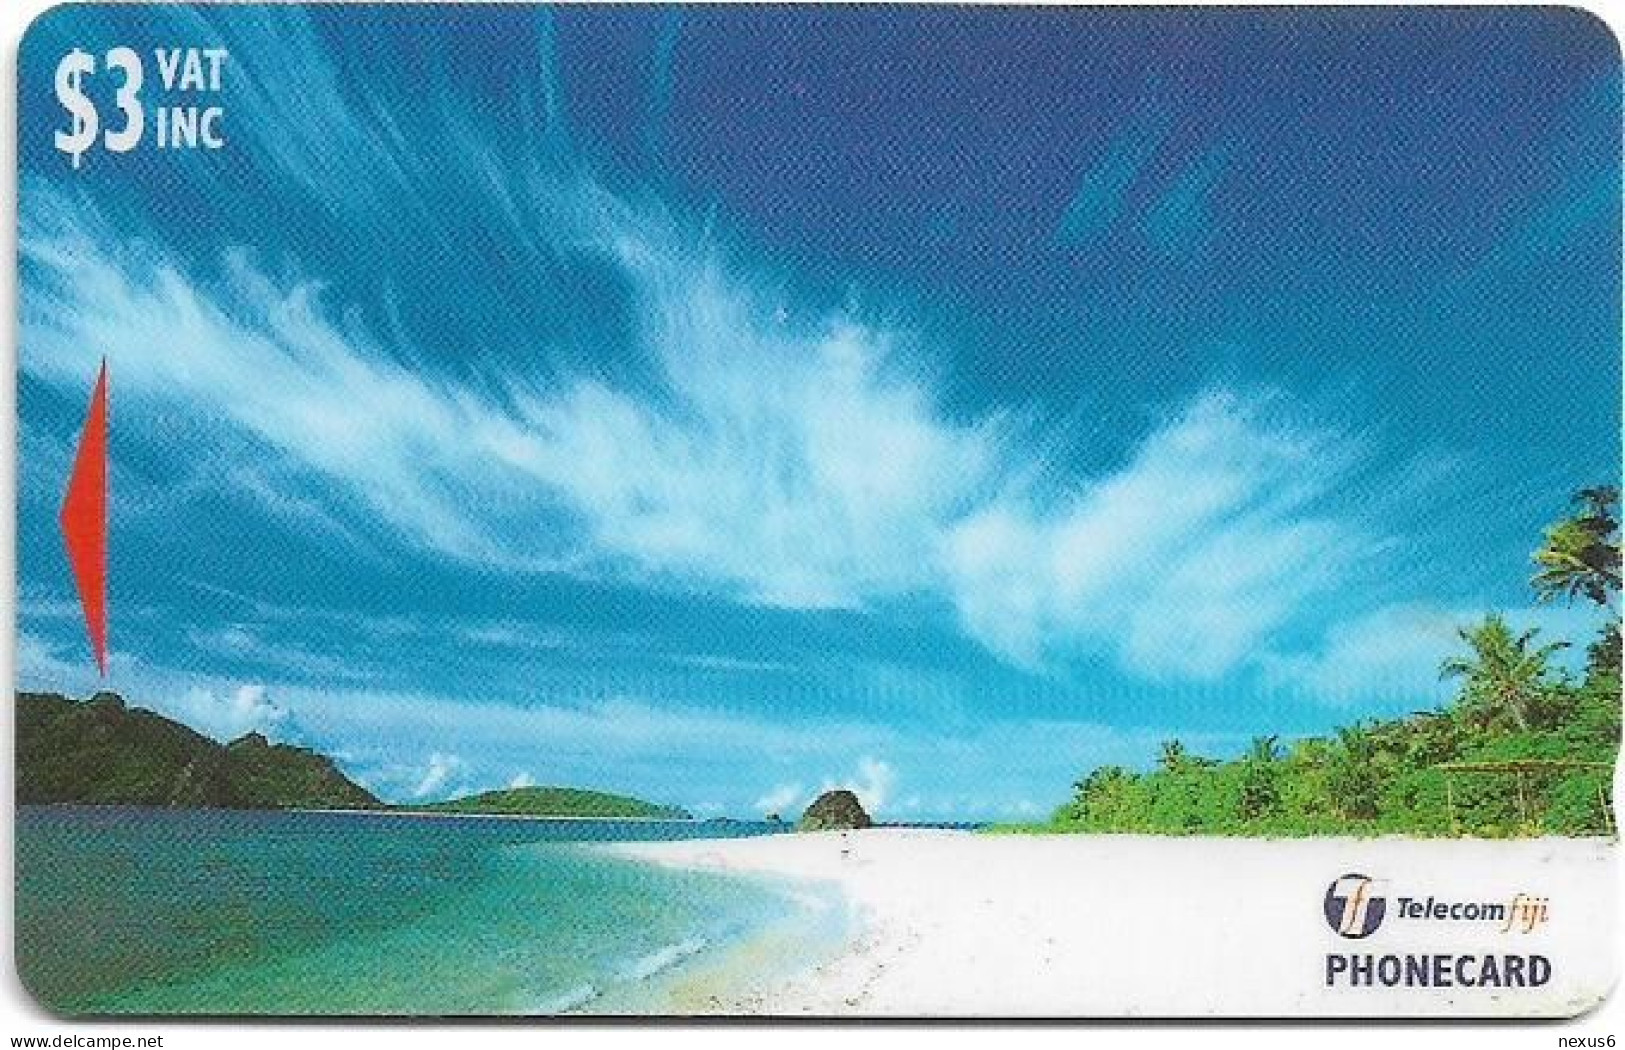 Fiji - Tel. Fiji - Yasawa Islands - Wayasewa - 26FJB - 1998, 3$, 50.000ex, Used - Fidji